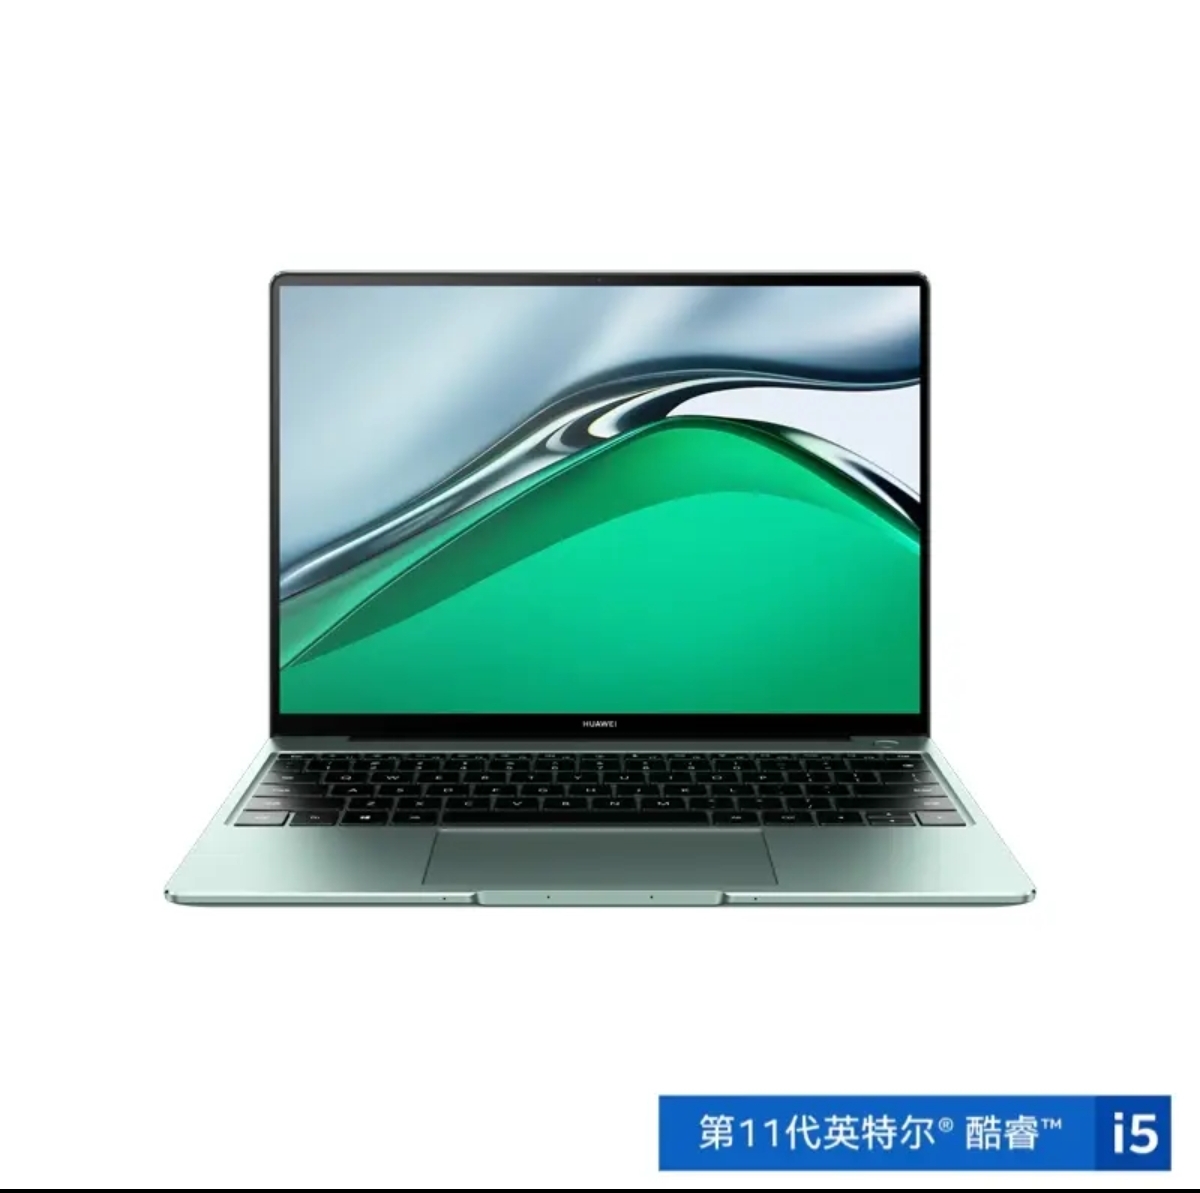 【华为笔记本】MateBook 14s【2021款 I5云杉绿 触控屏】